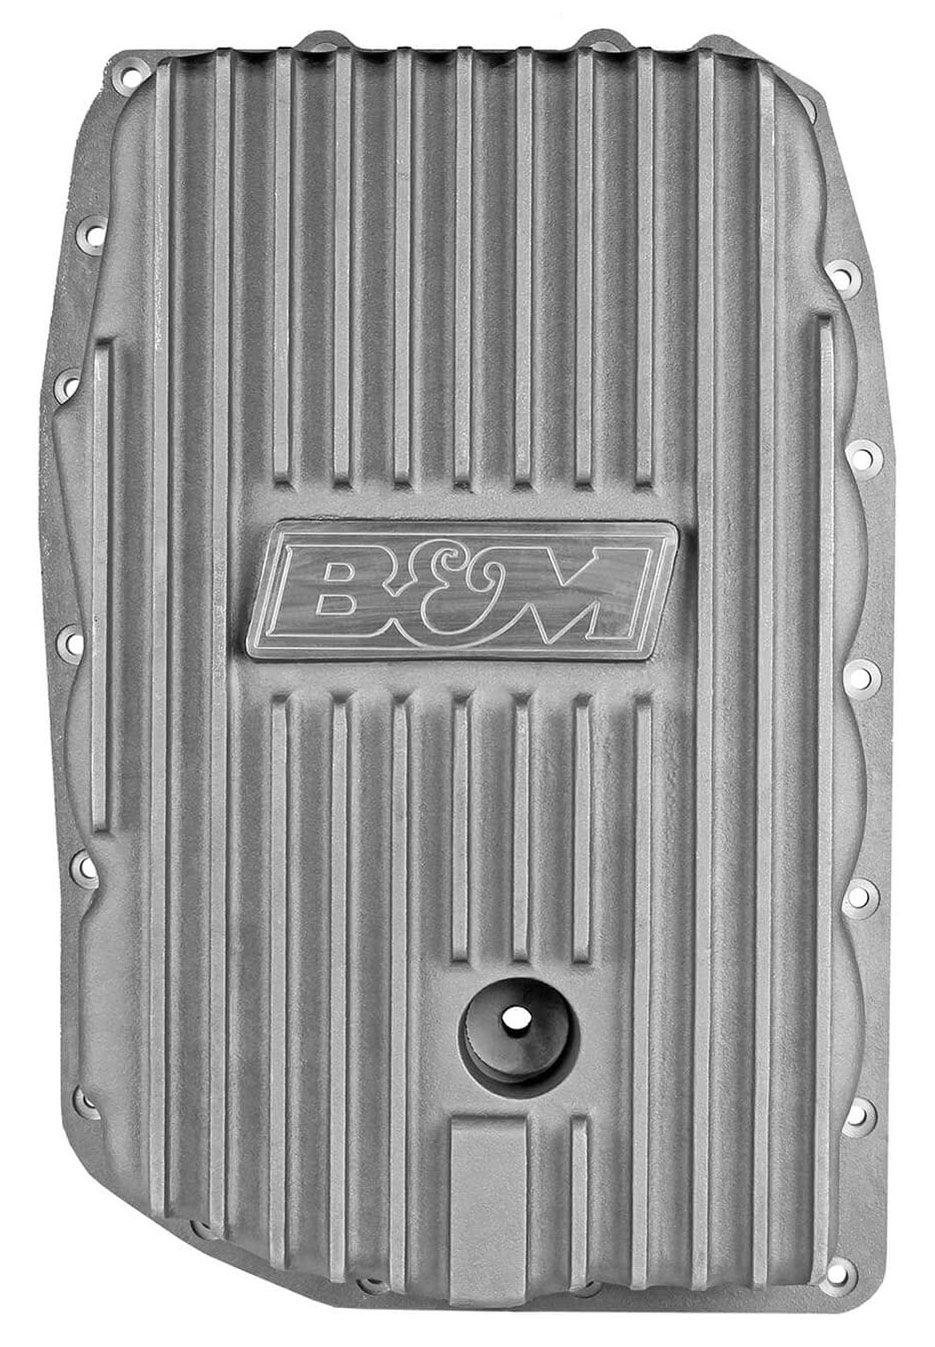 BM70391 - Cast Aluminium Deep Pan Suit GM 6L80